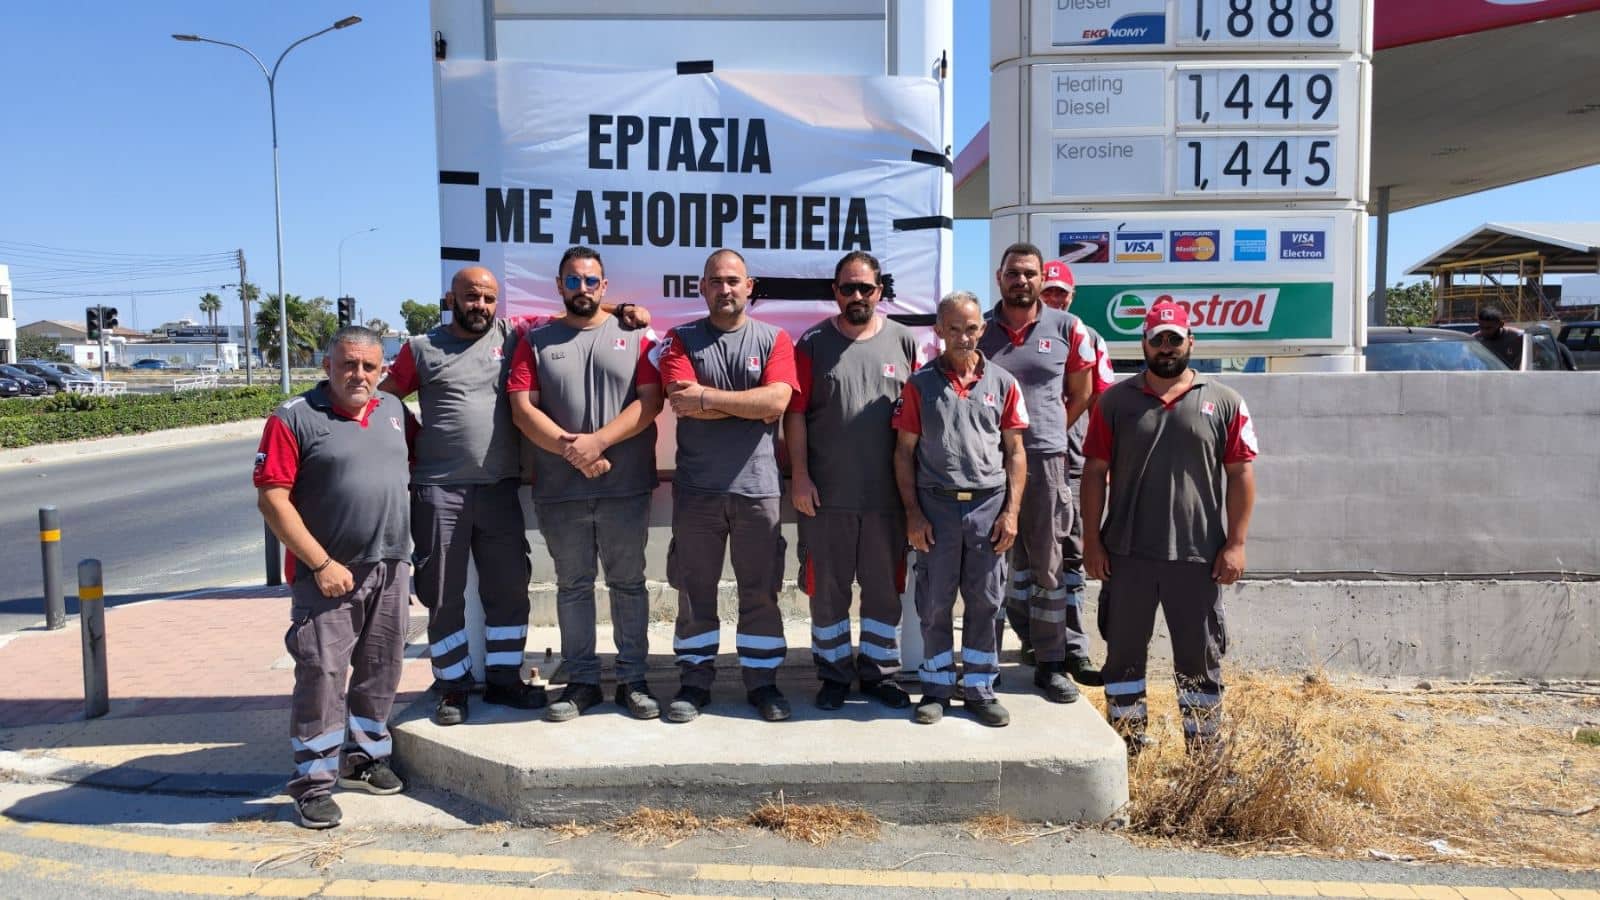 Συνεχίστηκε για 4η μέρα η απεργία των εργαζομένων στην εμφιάλωση και διανομή υγραερίου της εταιρείας Ελληνικά Πετρέλαια (ΕΚΟ) στη Λάρνακα